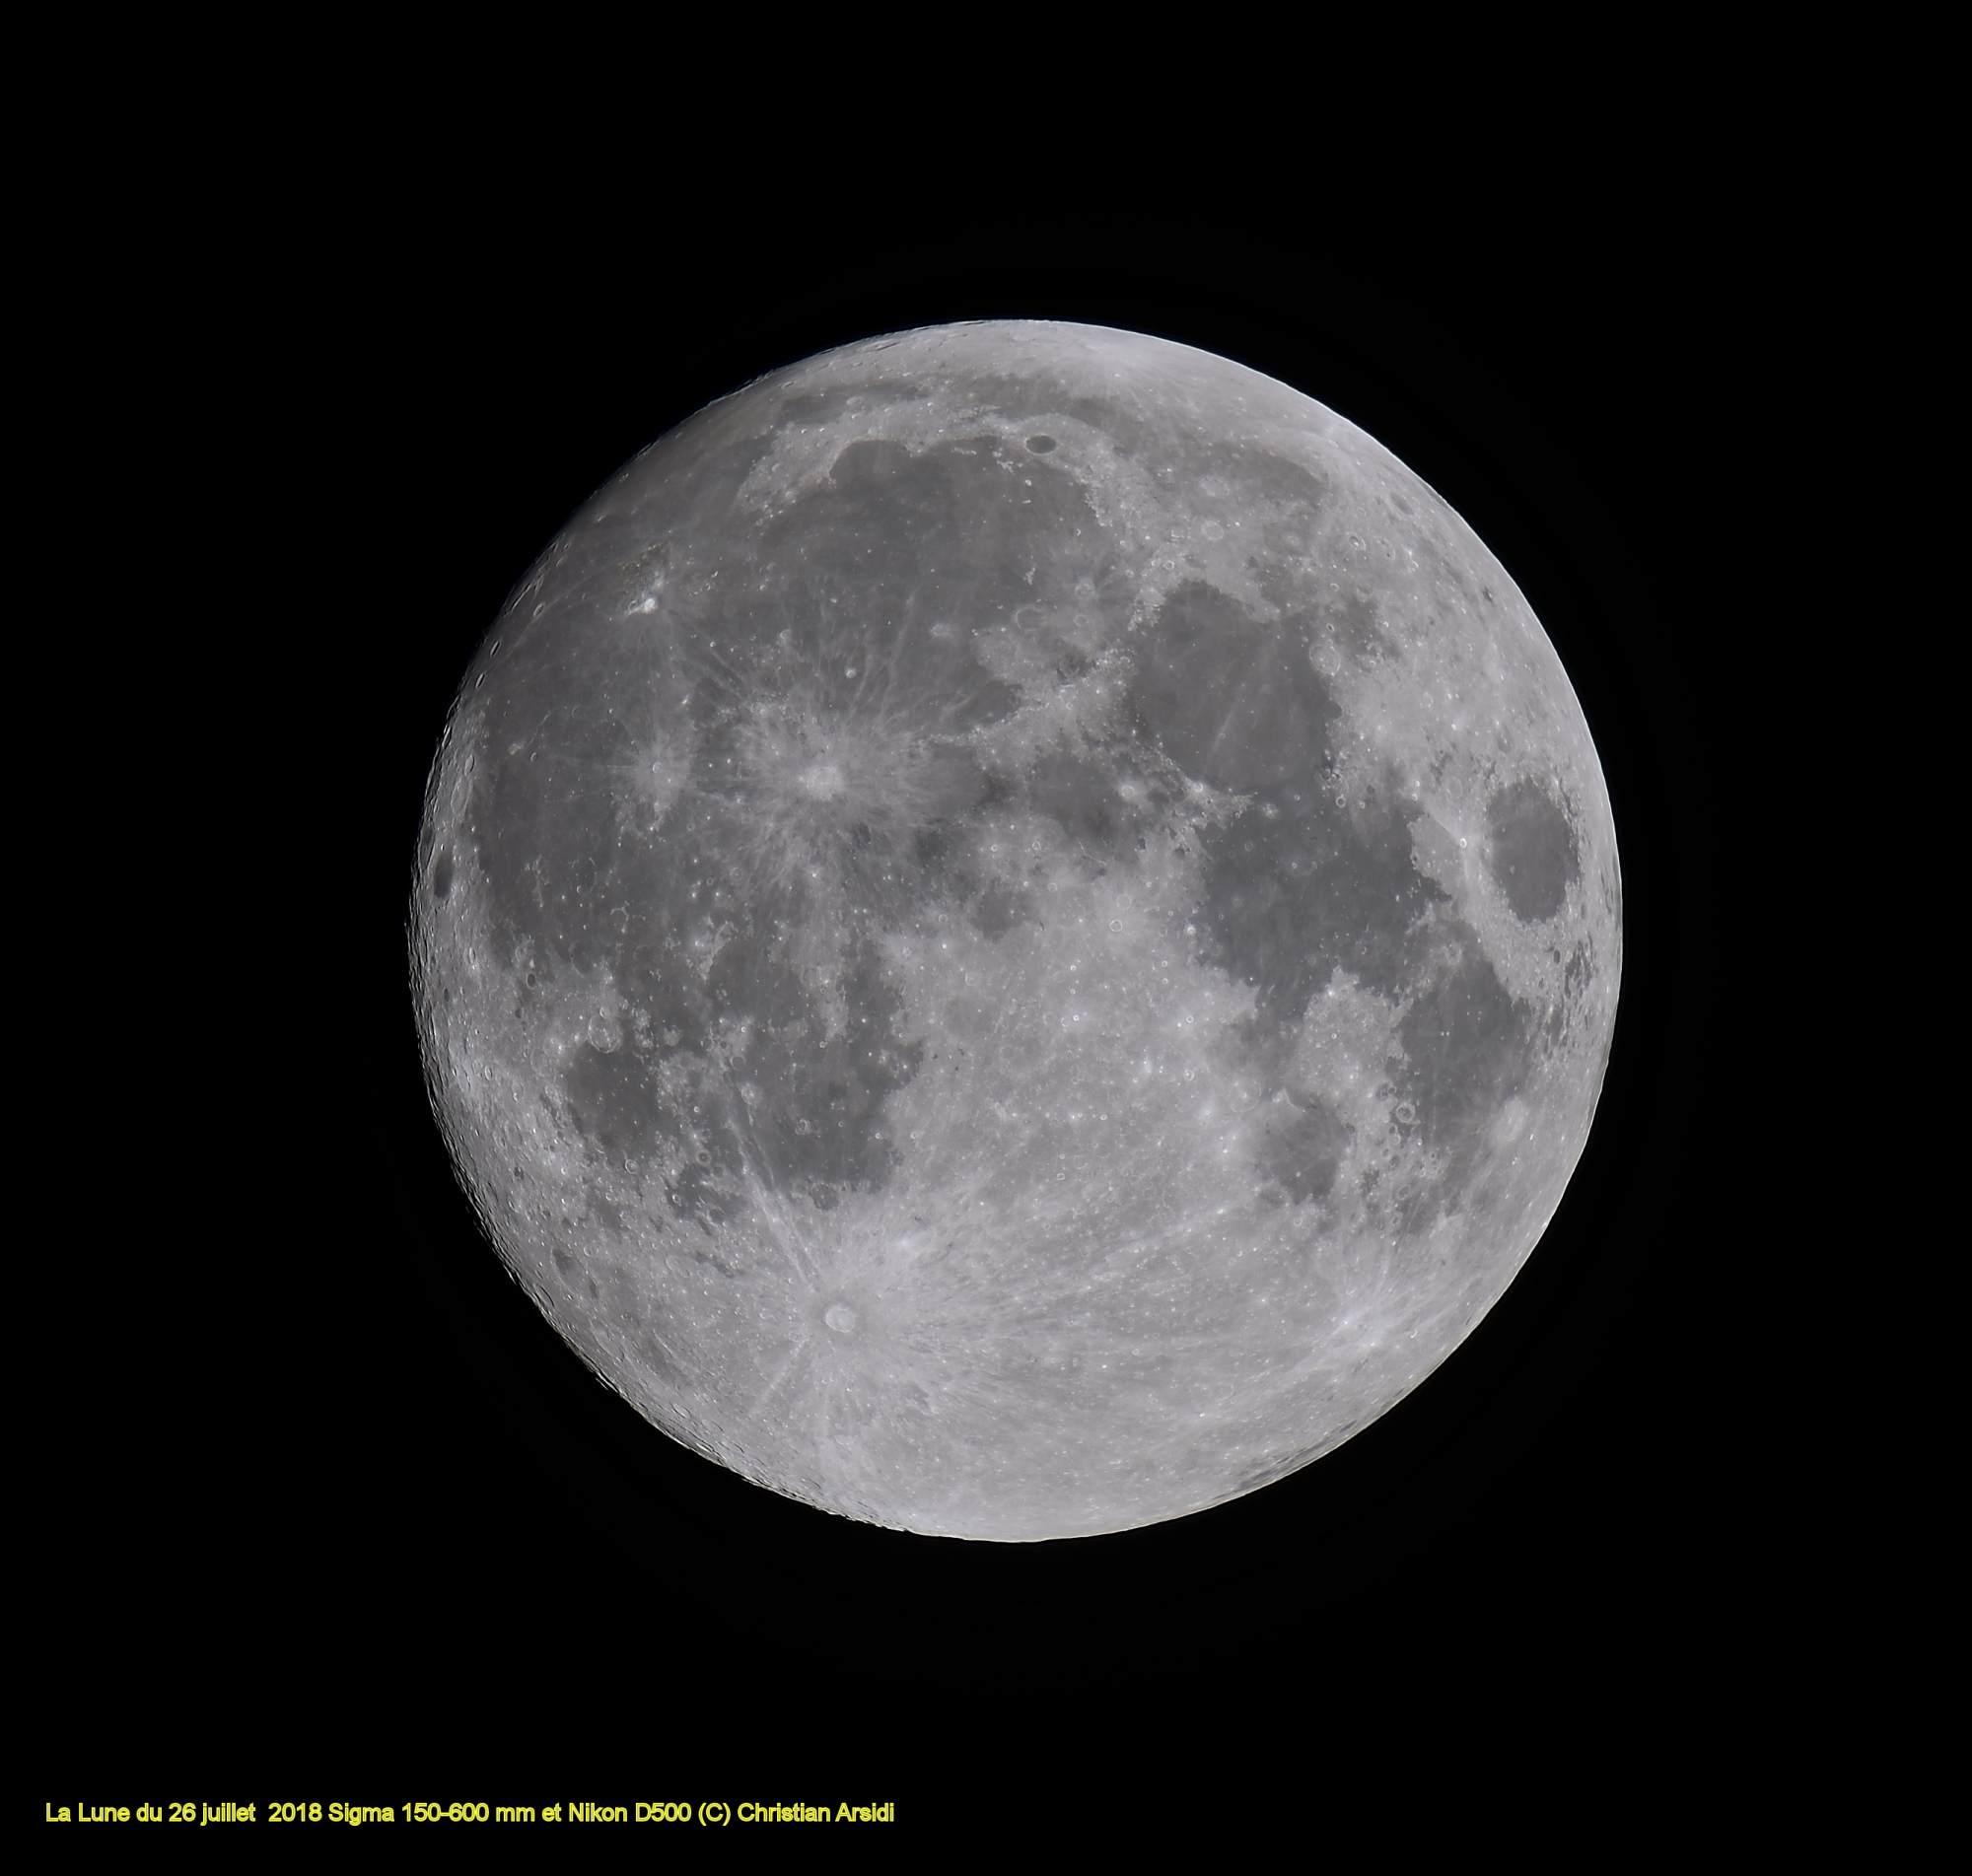 La Lune 14 images TTB CA_DxO-1 1 BV 2 recadrée 100% Jpeg.jpg